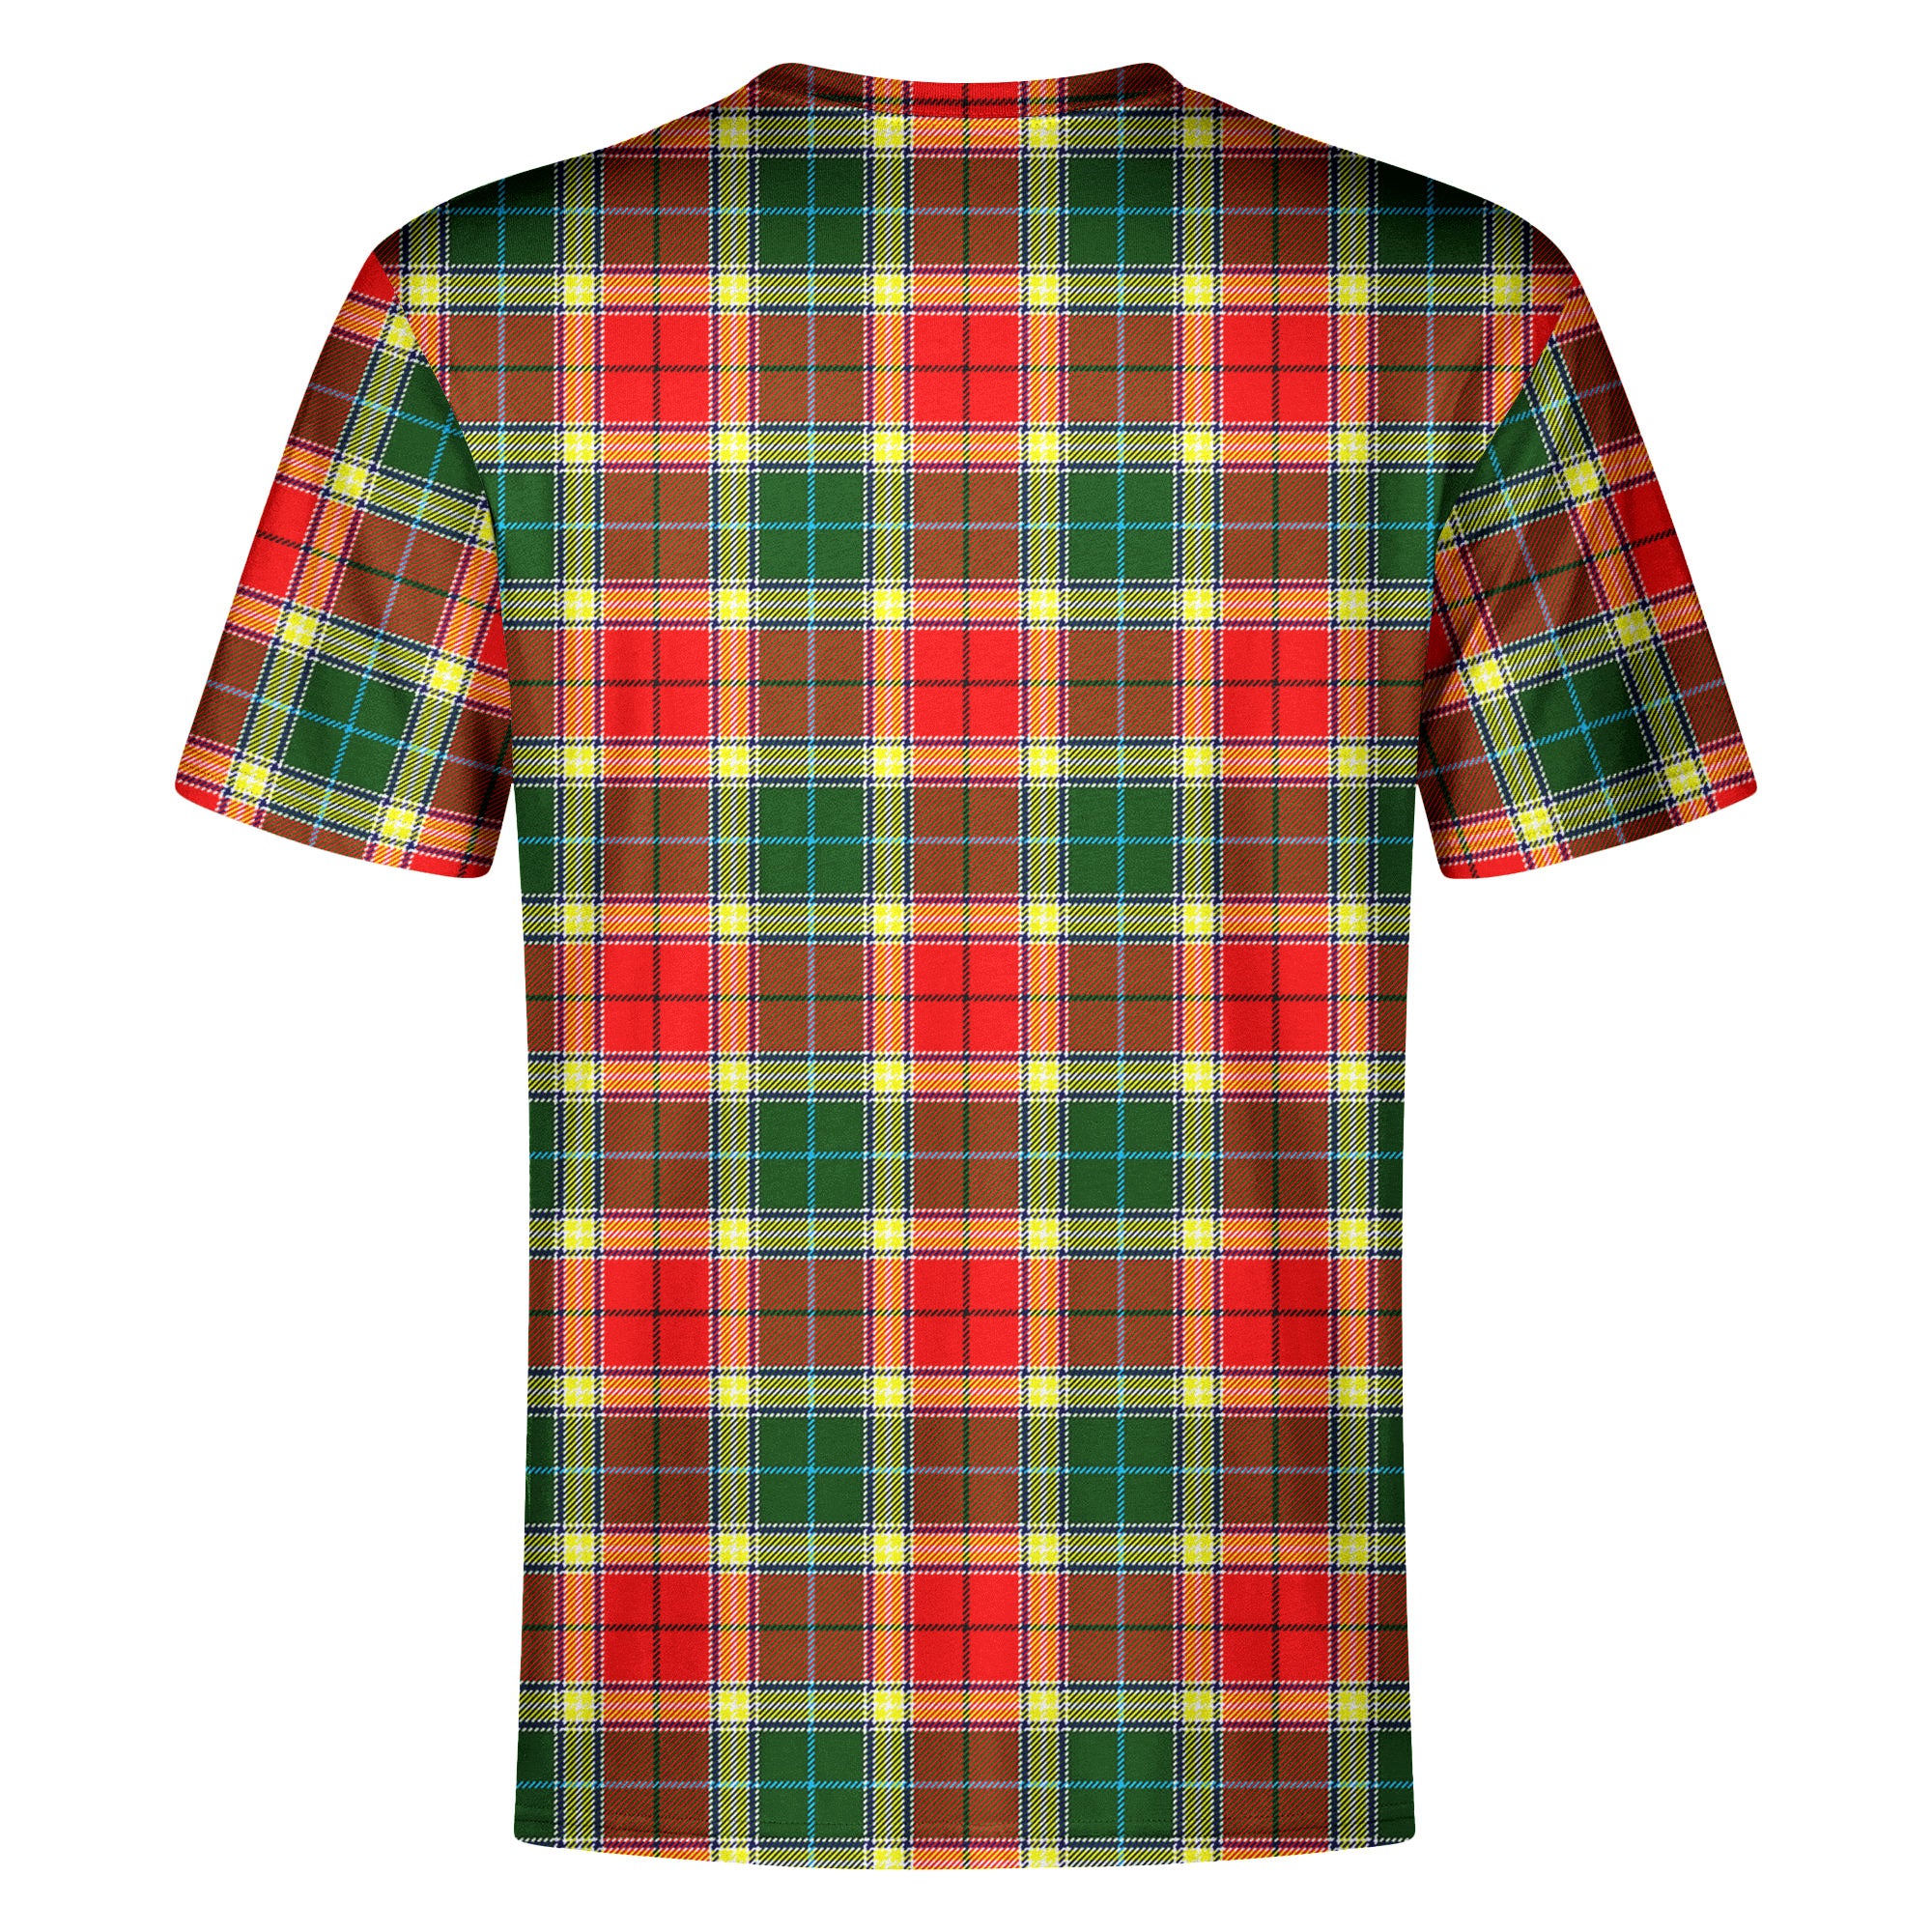 Gibson Tartan Crest T-shirt